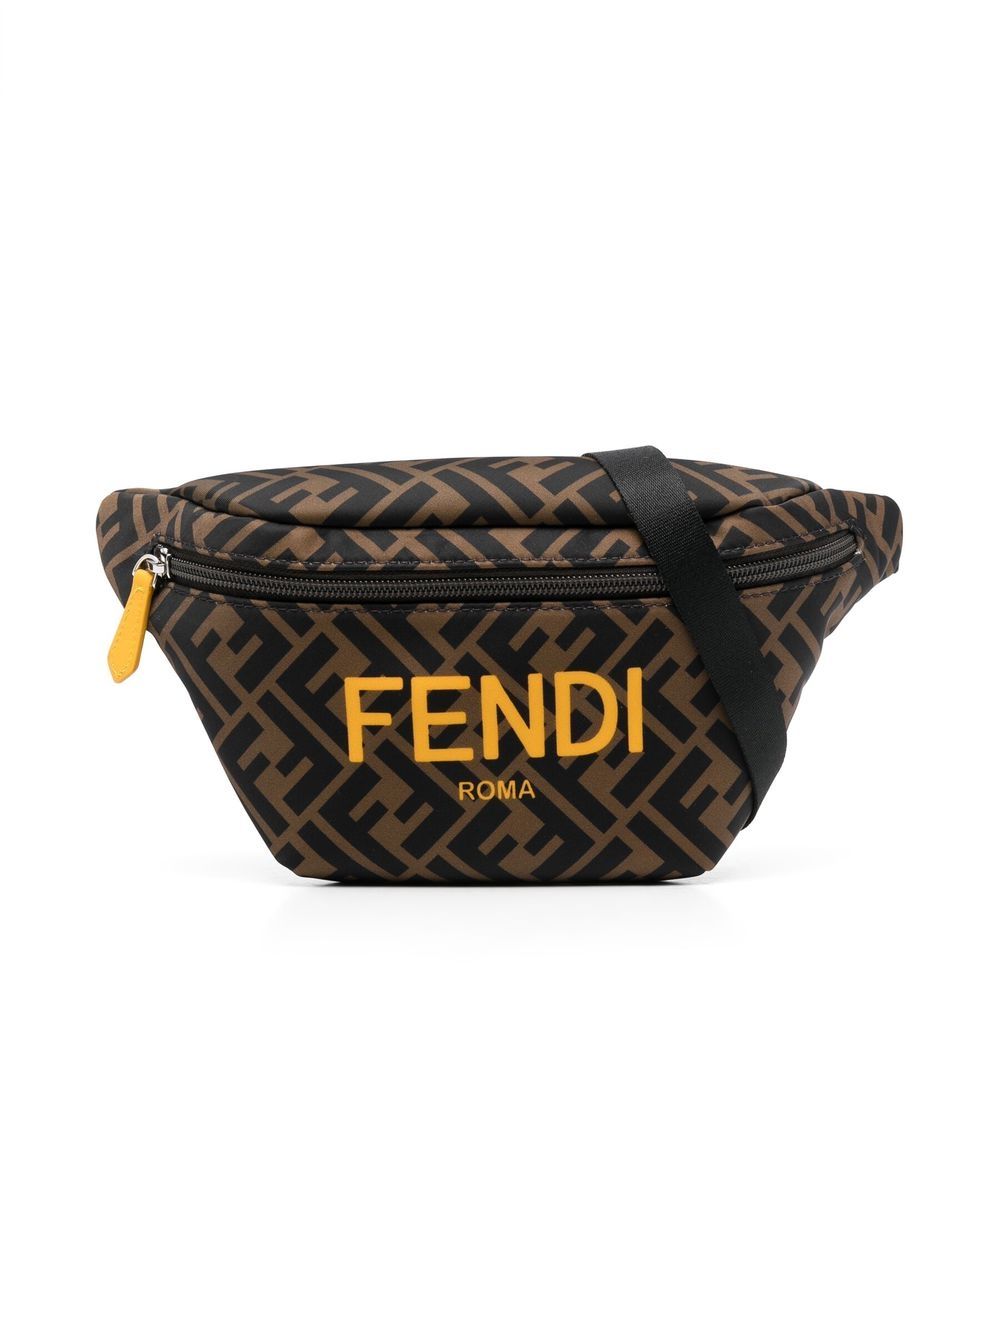 Fendi Kids' Monogrammed Zip-up Bag In Brown